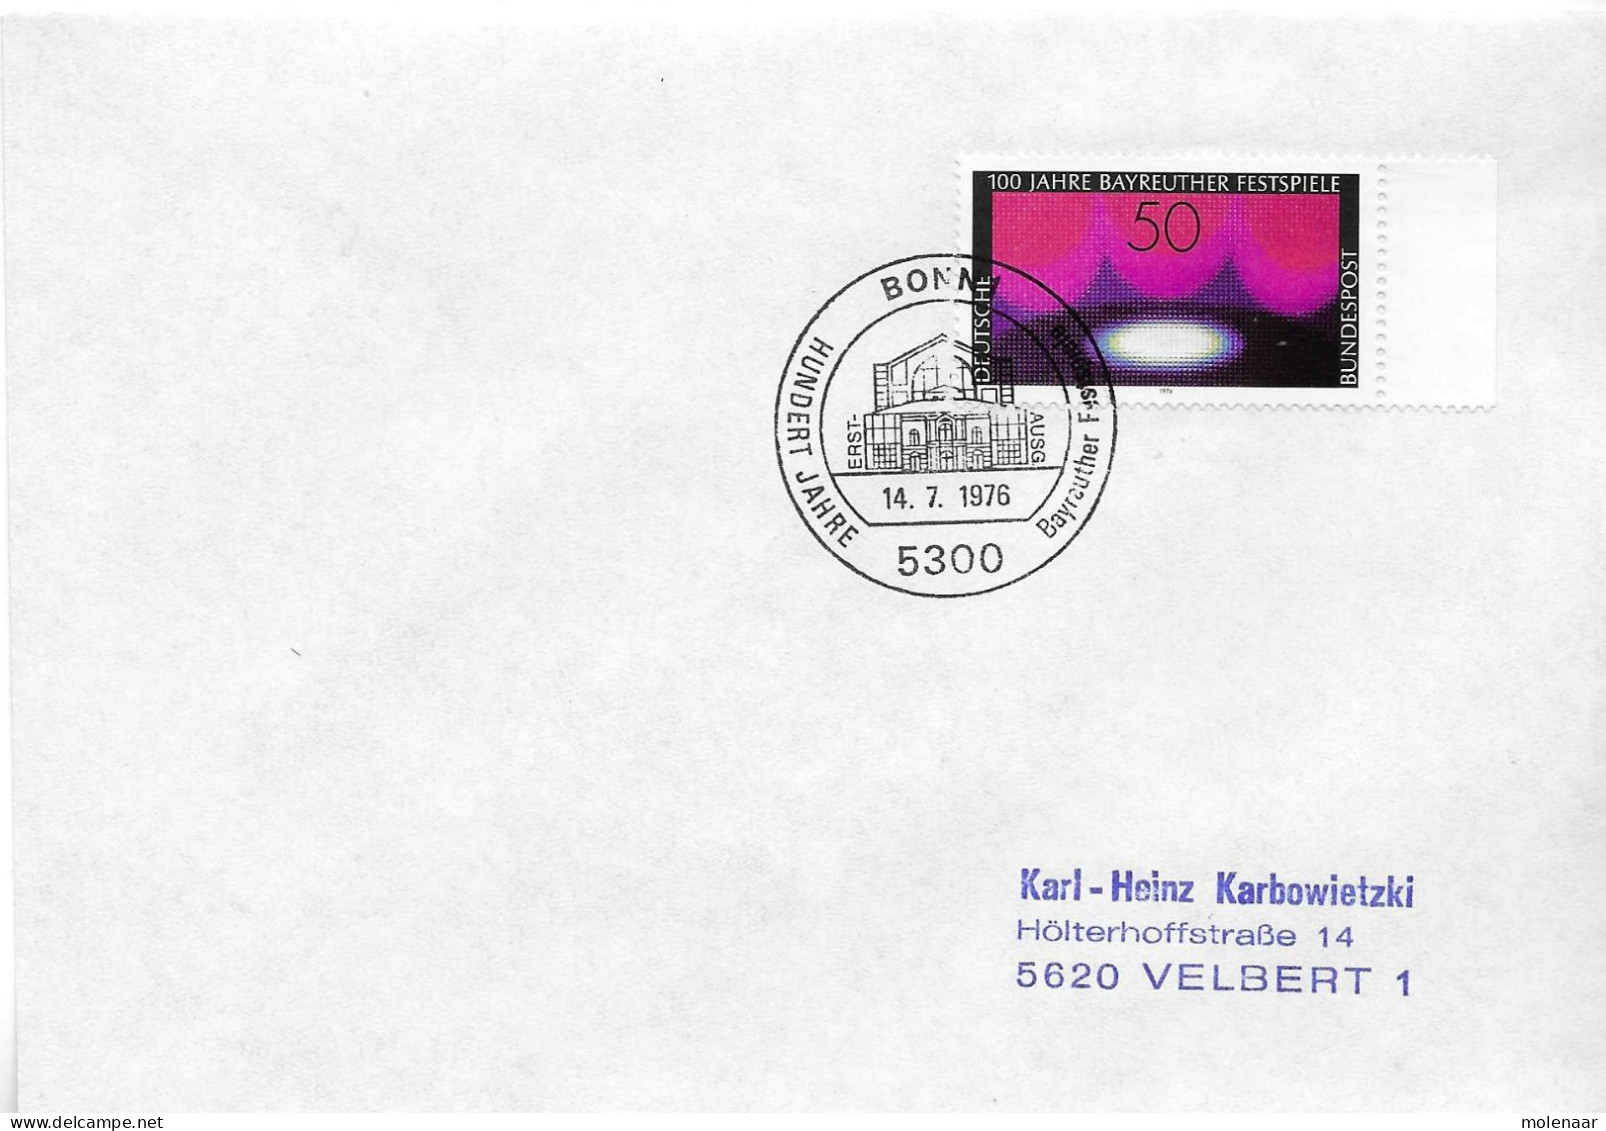 Postzegels > Europa > Duitsland > West-Duitsland > 1970-1979 > Brief Met No. 896  (17378) - Storia Postale